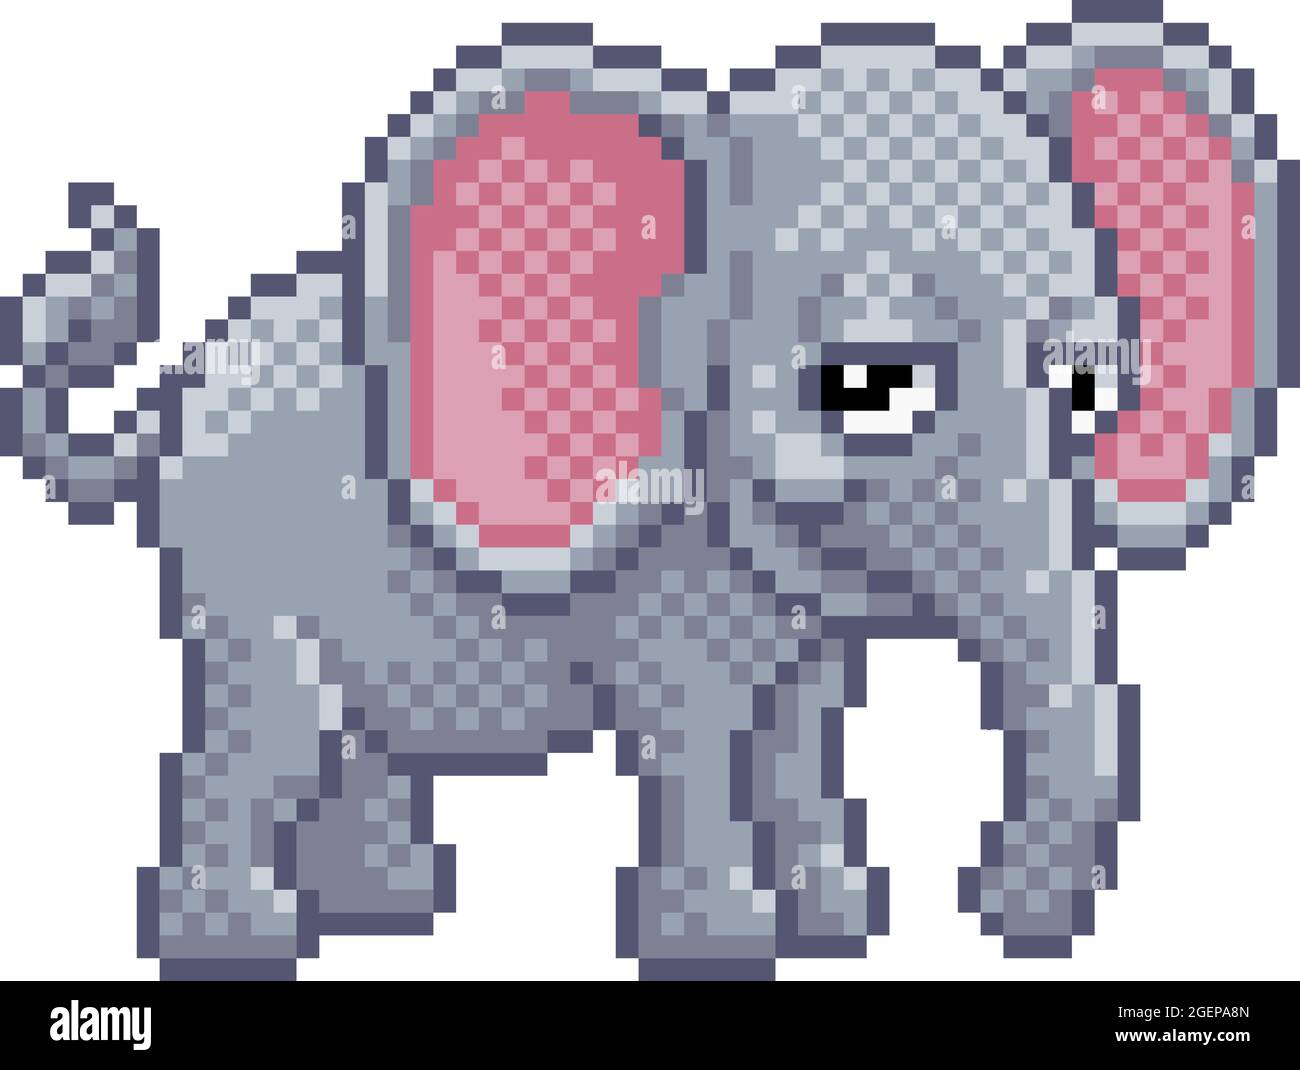 Dessin animé d'un jeu vidéo éléphant 8 bits Pixel Art Animal Illustration de Vecteur